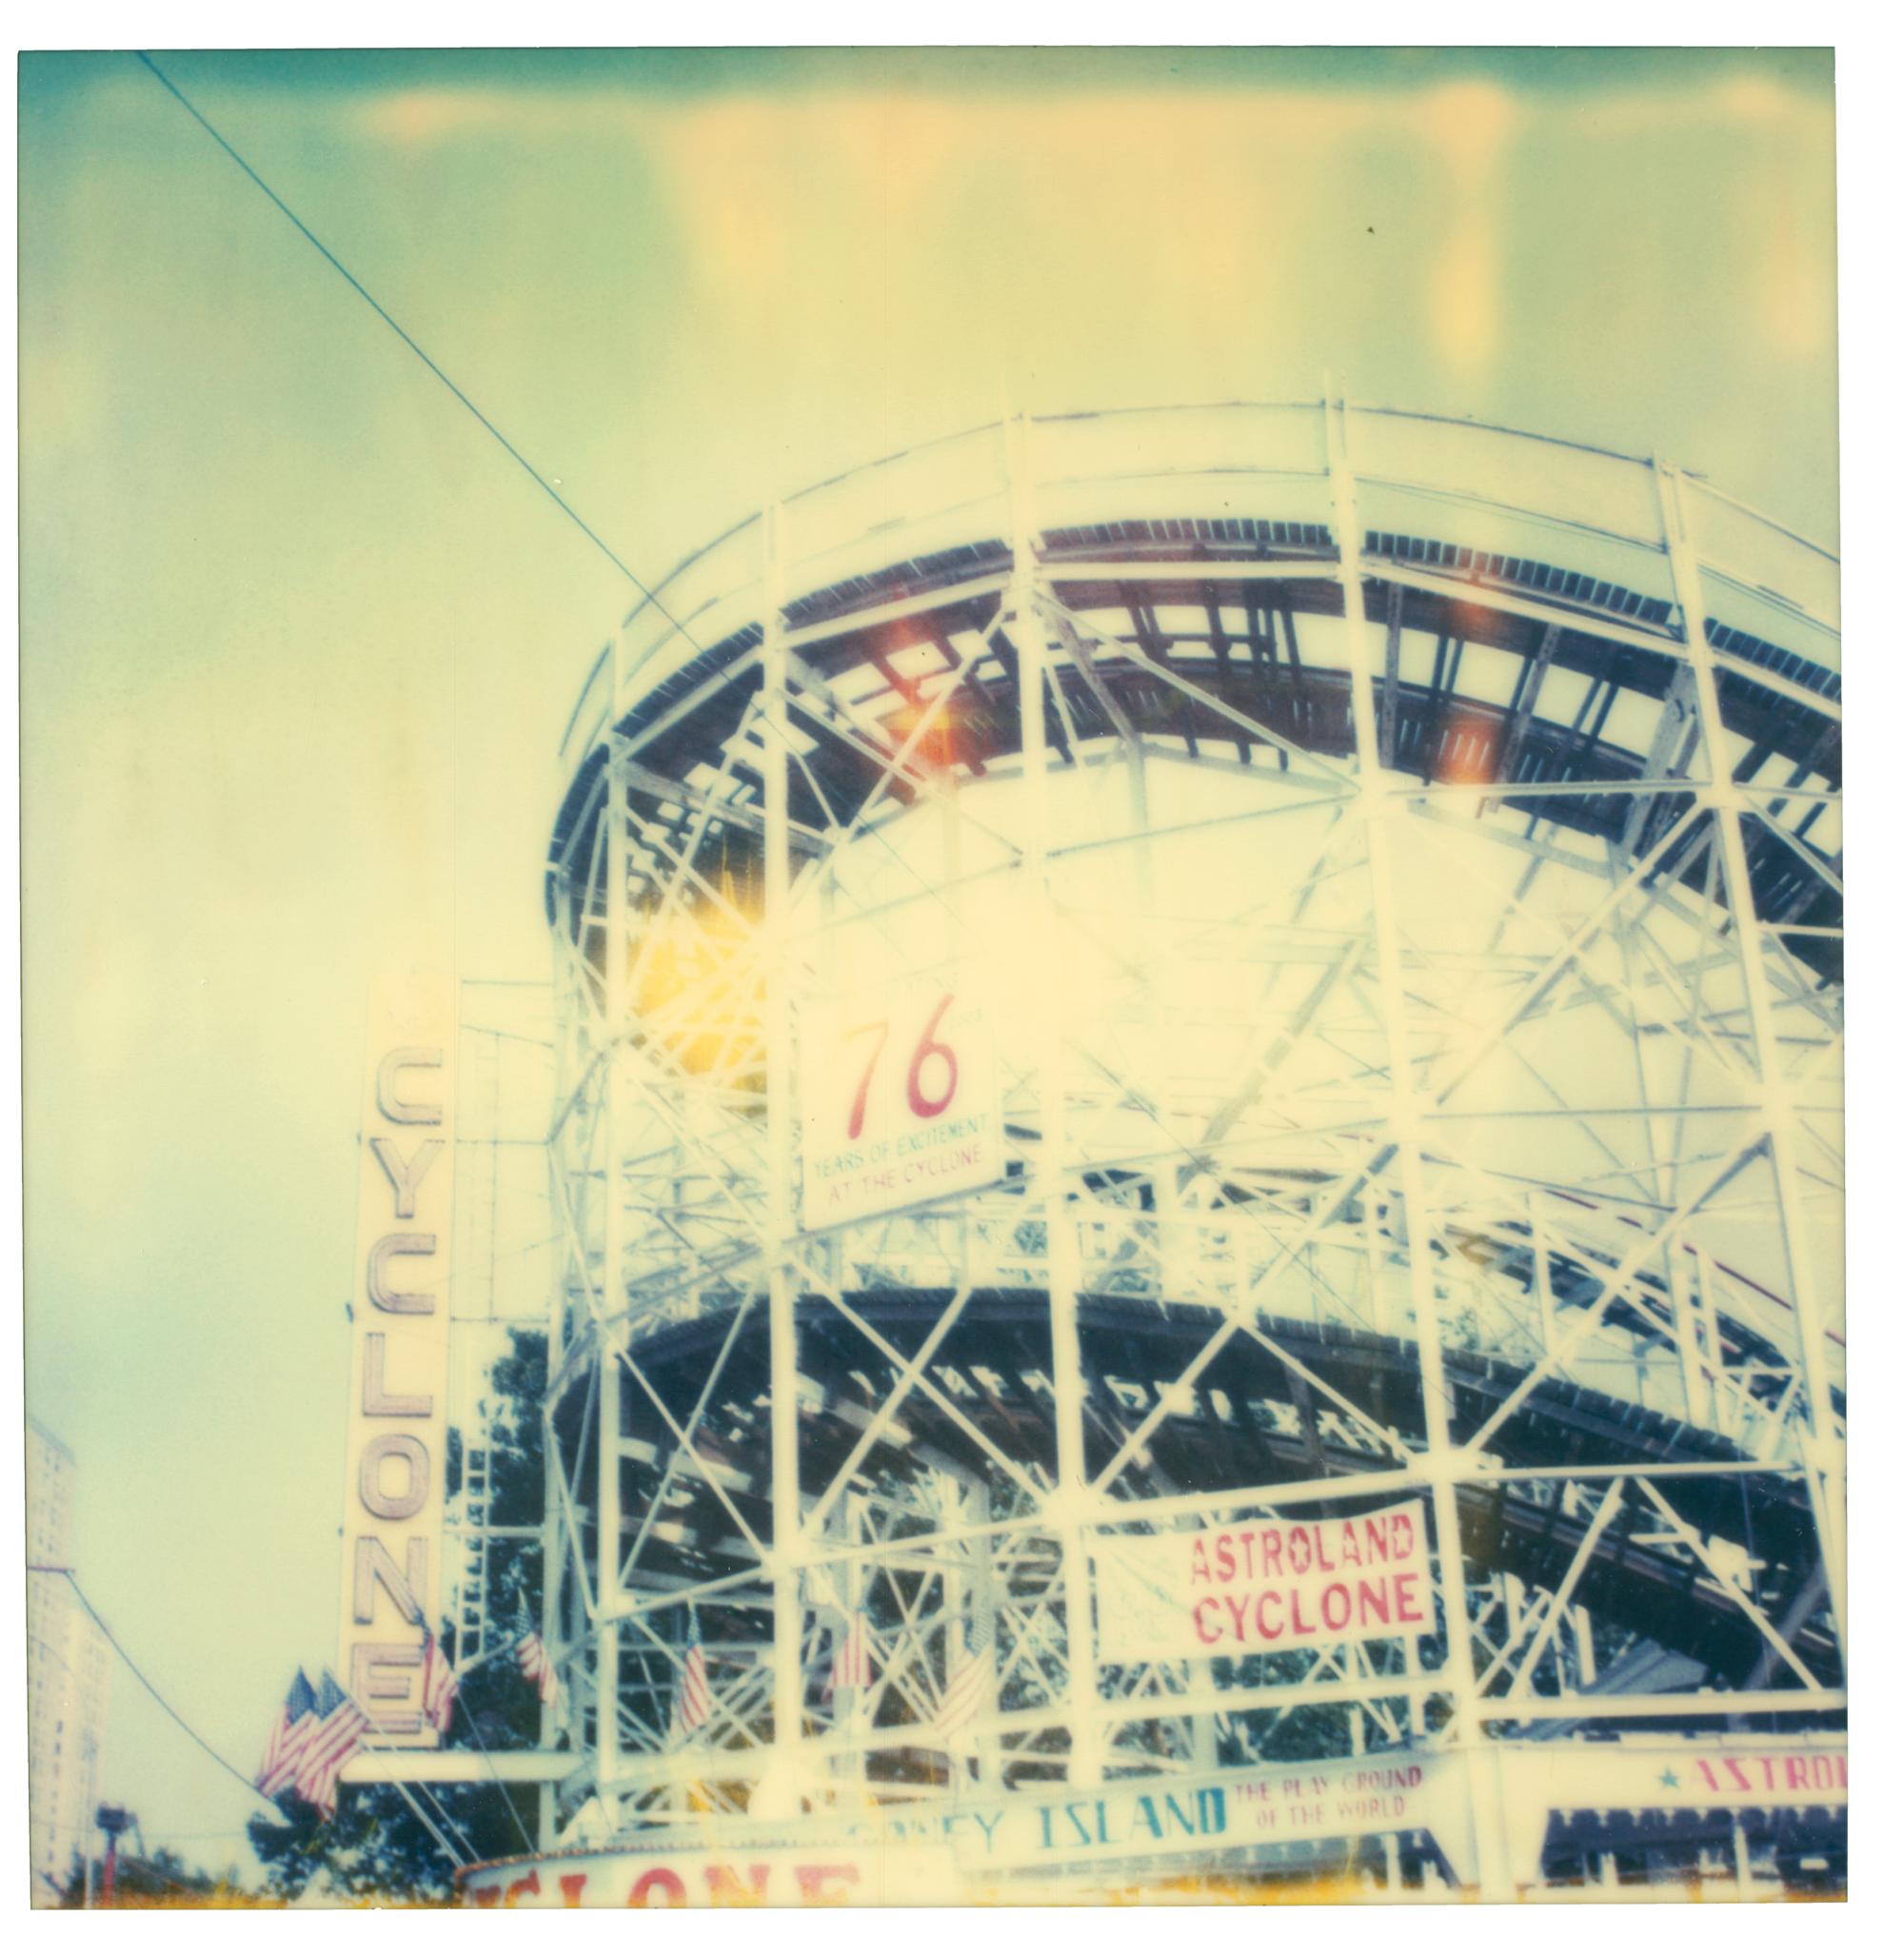 Stefanie Schneider Color Photograph – Cyclone (Stay) – Coney Island, 21. Jahrhundert, Zeitgenössisch, Ikonen, Landschaft